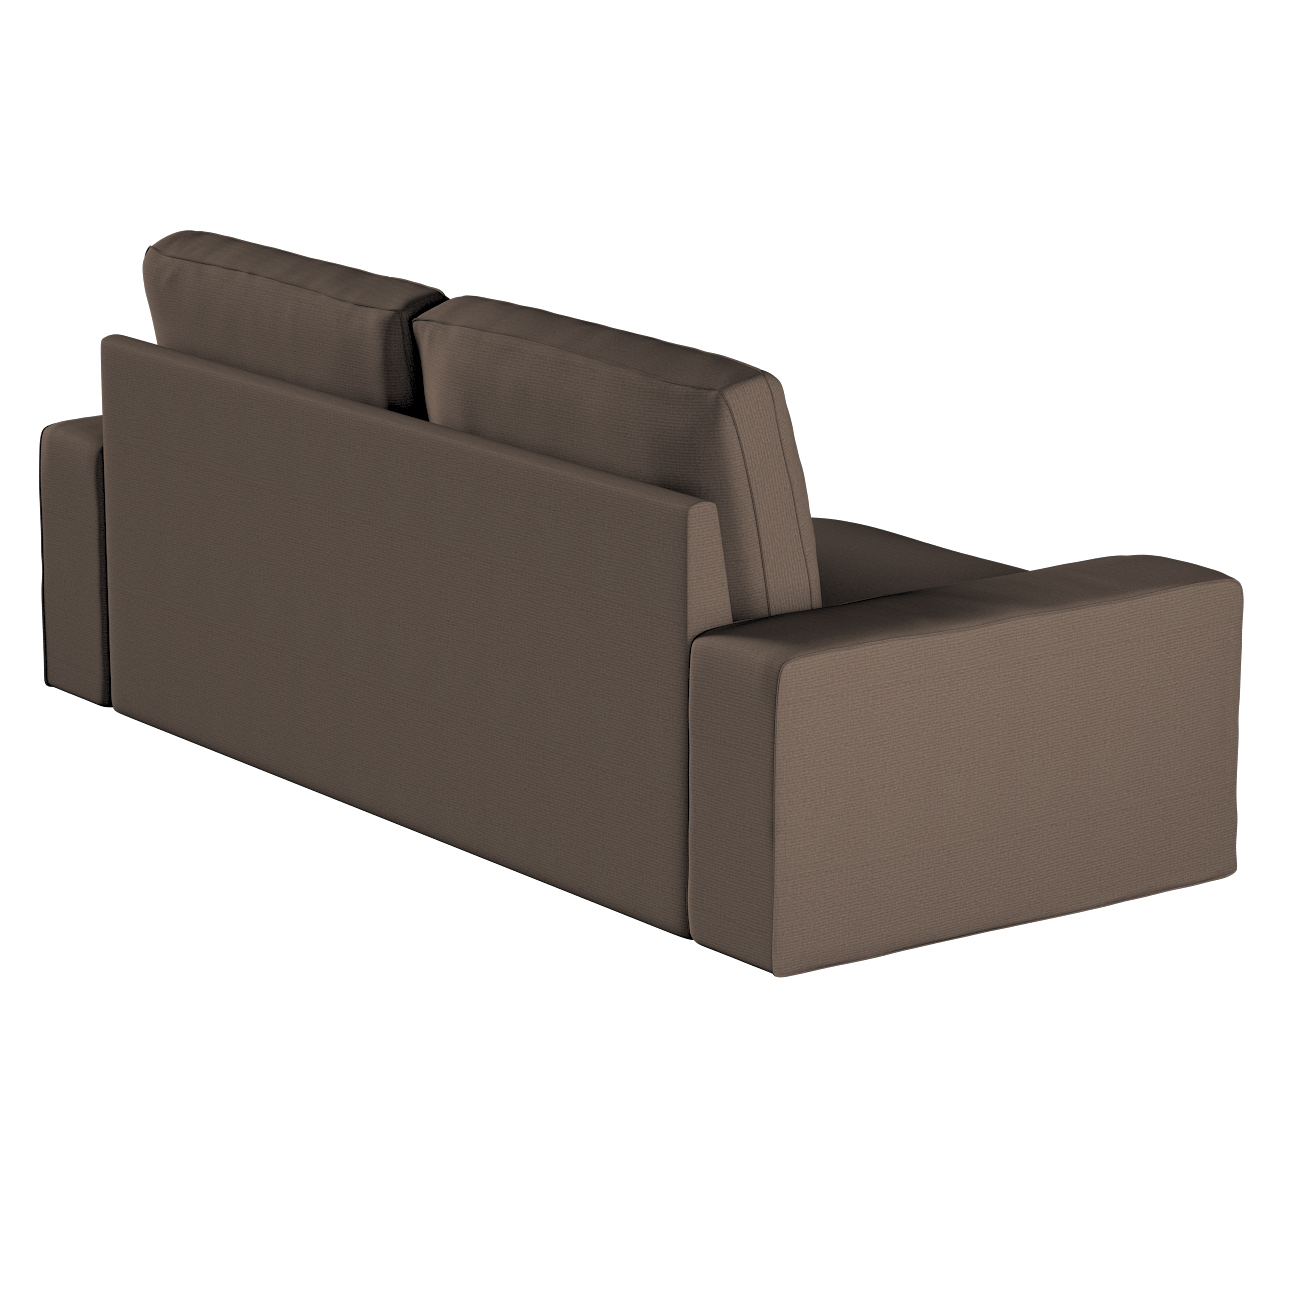 Bezug für Kivik 3-Sitzer Sofa, braun, Bezug für Sofa Kivik 3-Sitzer, Etna ( günstig online kaufen